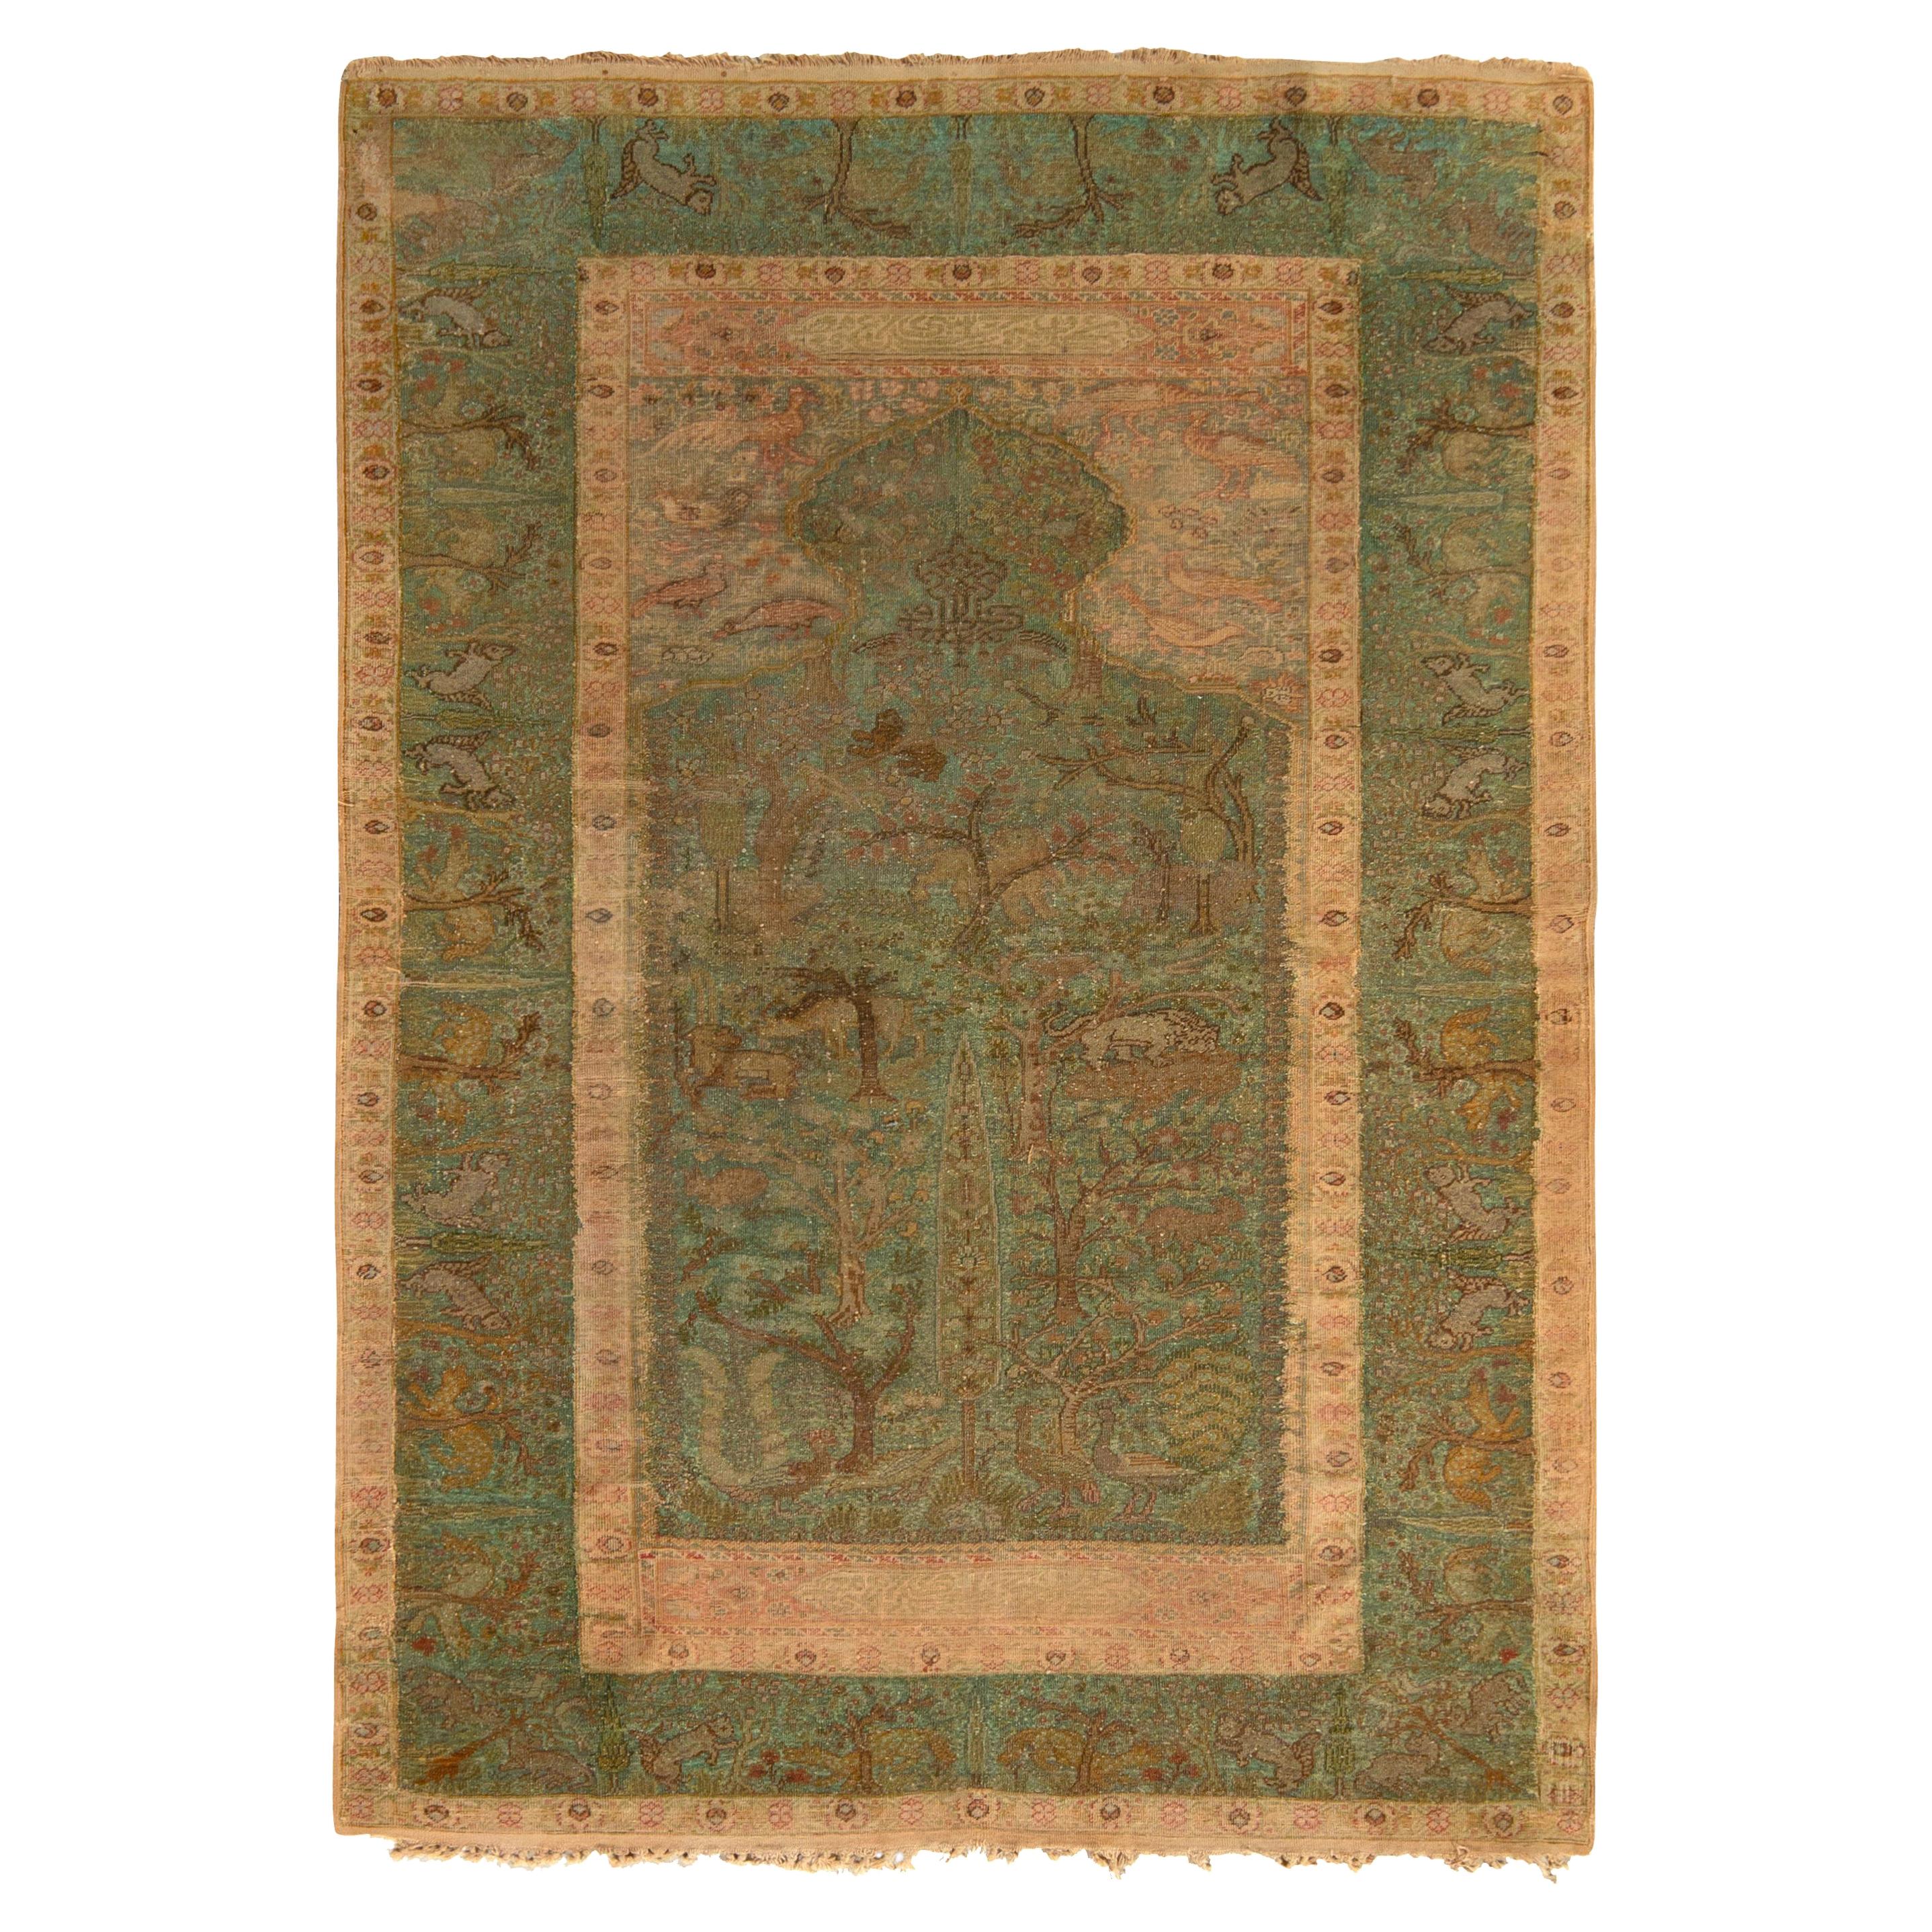 Antique Kayseri Rug in Green and Beige-Brown Floral Pattern by Rug & Kilim